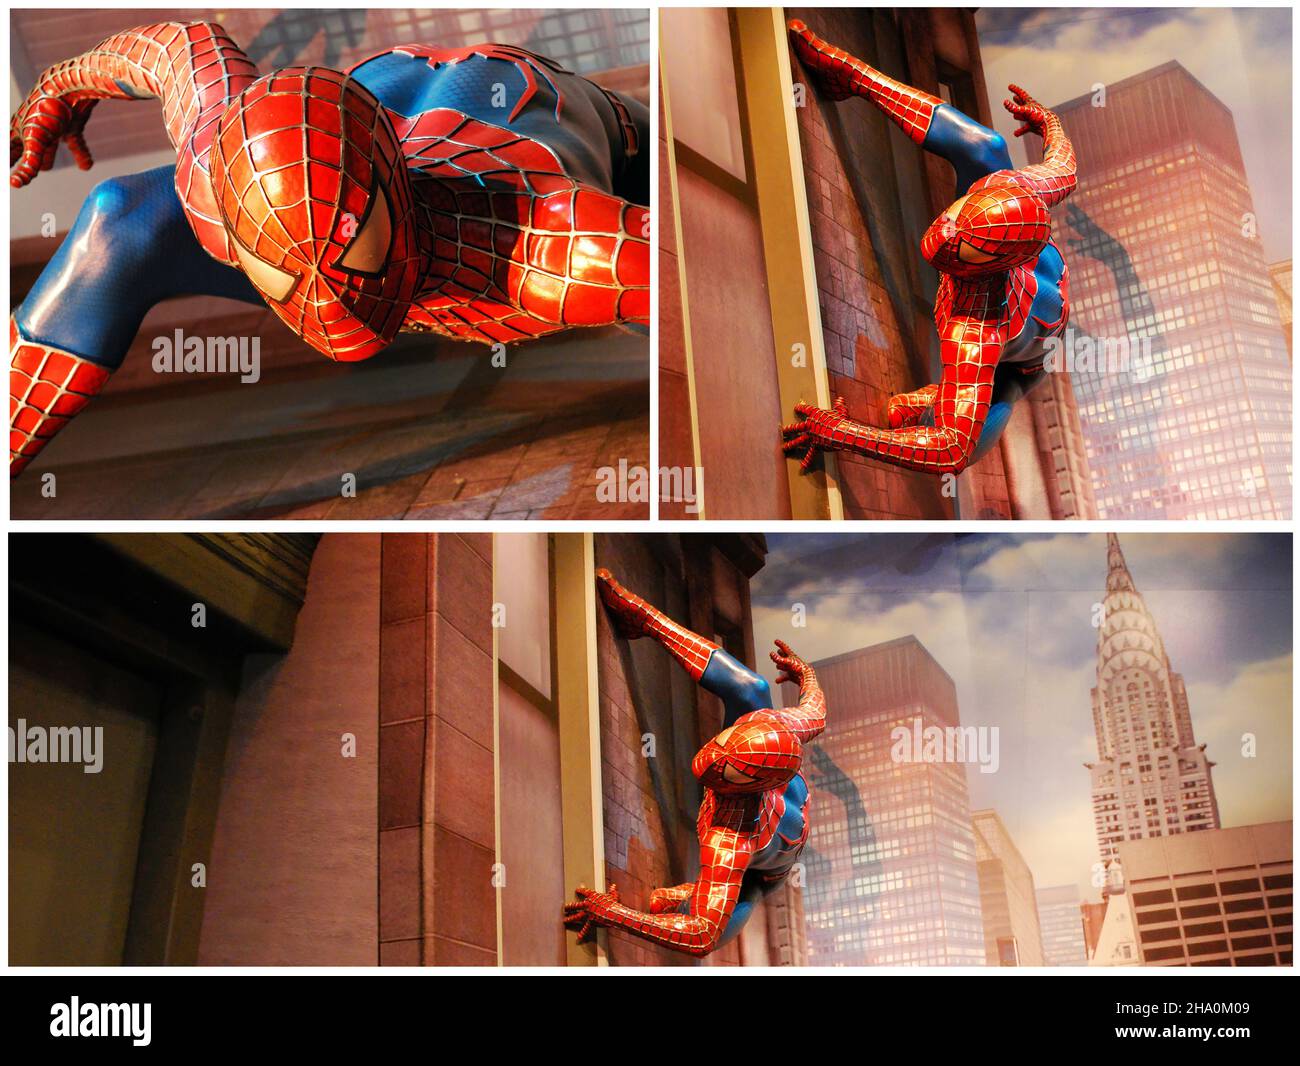 Amsterdam - Niederlande - 8. August 2018: Collage der erstaunlichen Spider-man lebensgroßen Statue. Madame Tussauds Museum. Amsterdam. Stockfoto